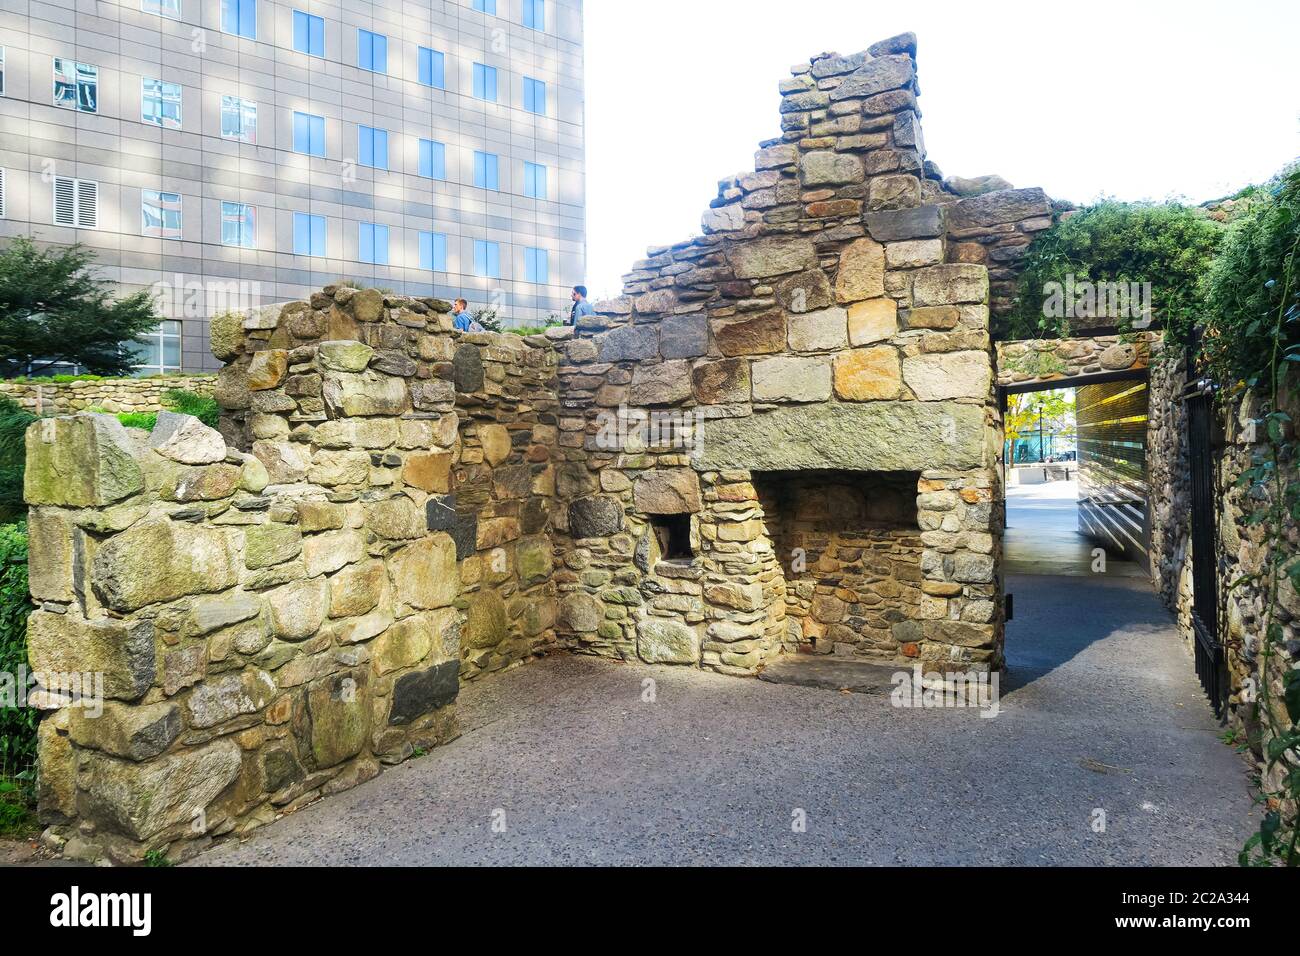 The Irish Hunger Memorial in New York. Stock Photo